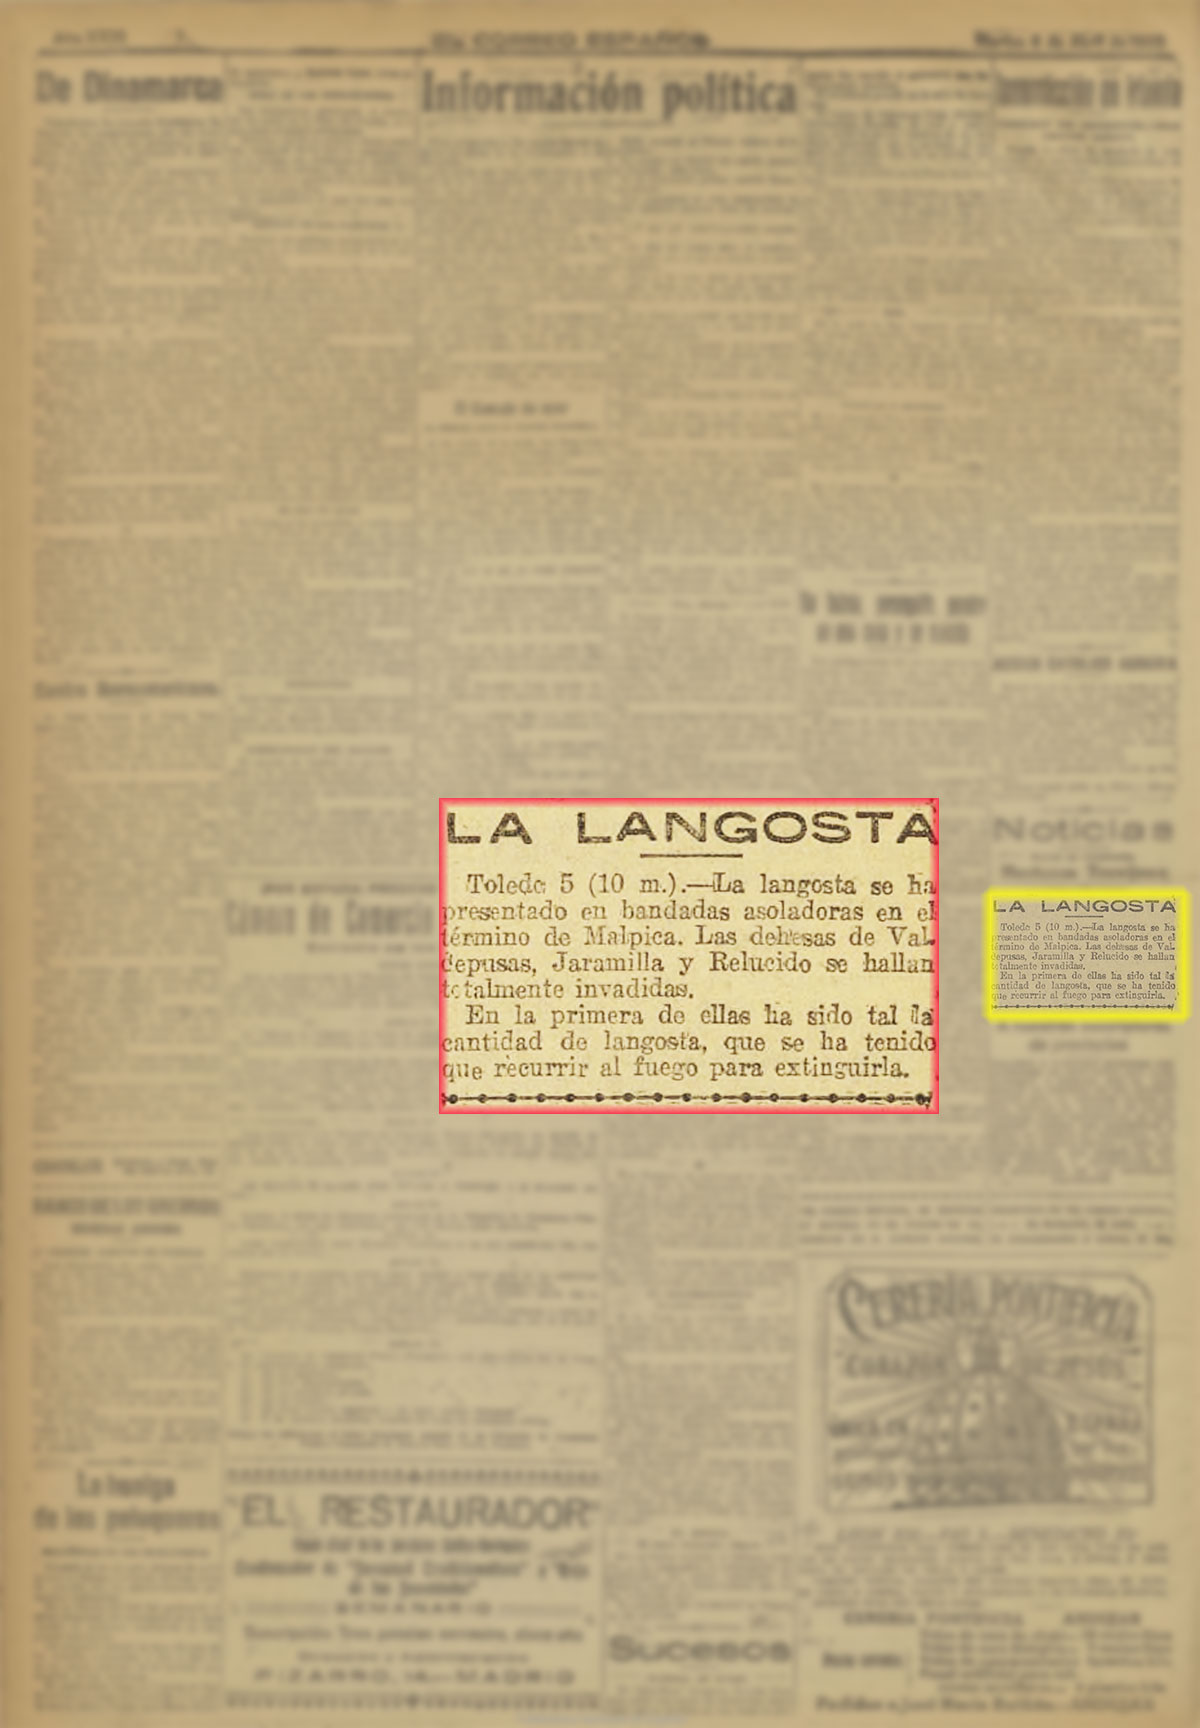 El Correo españo, l6-4-1920. Plaga de langosta en Valdepusa